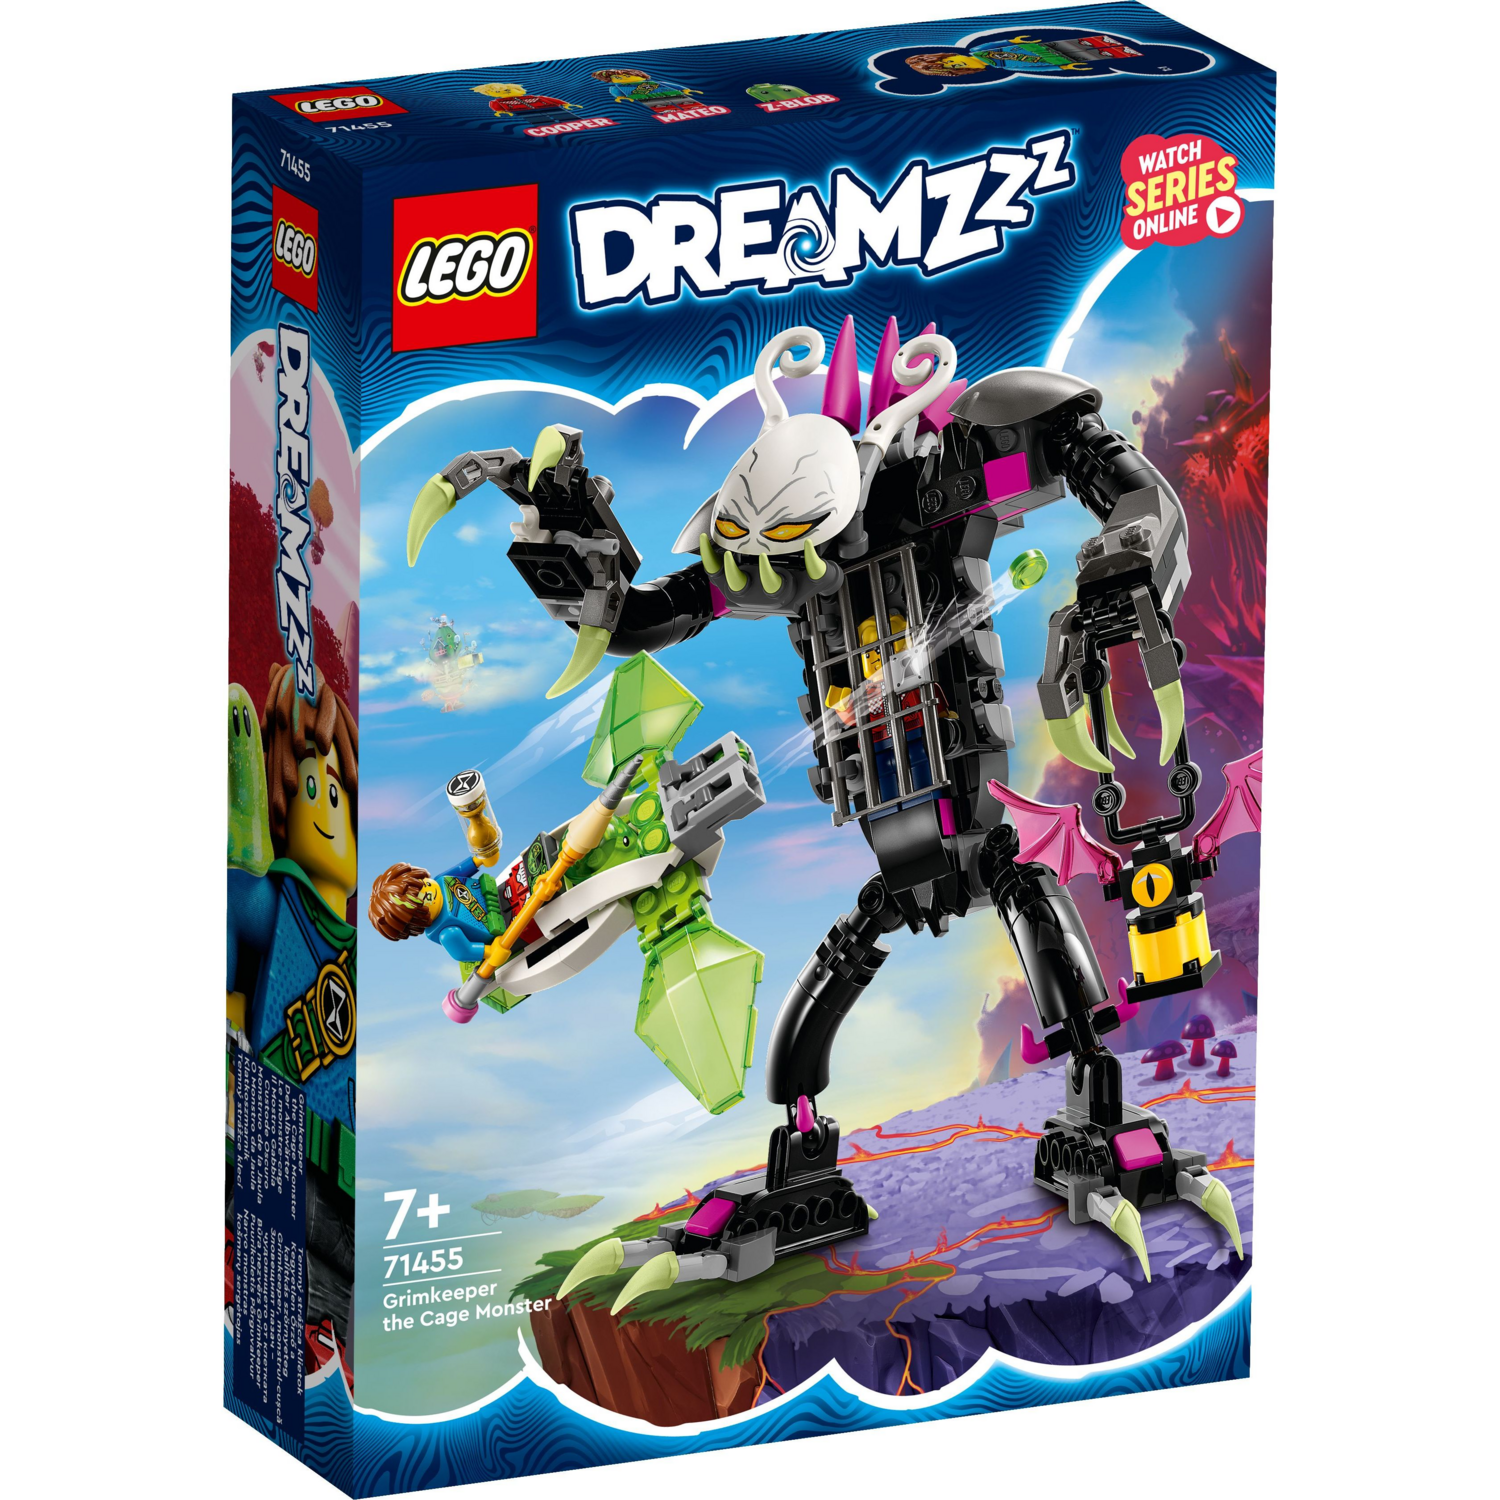 LEGO 71455 Dreamzzz Гримкипер, монстр с клеткой фото 